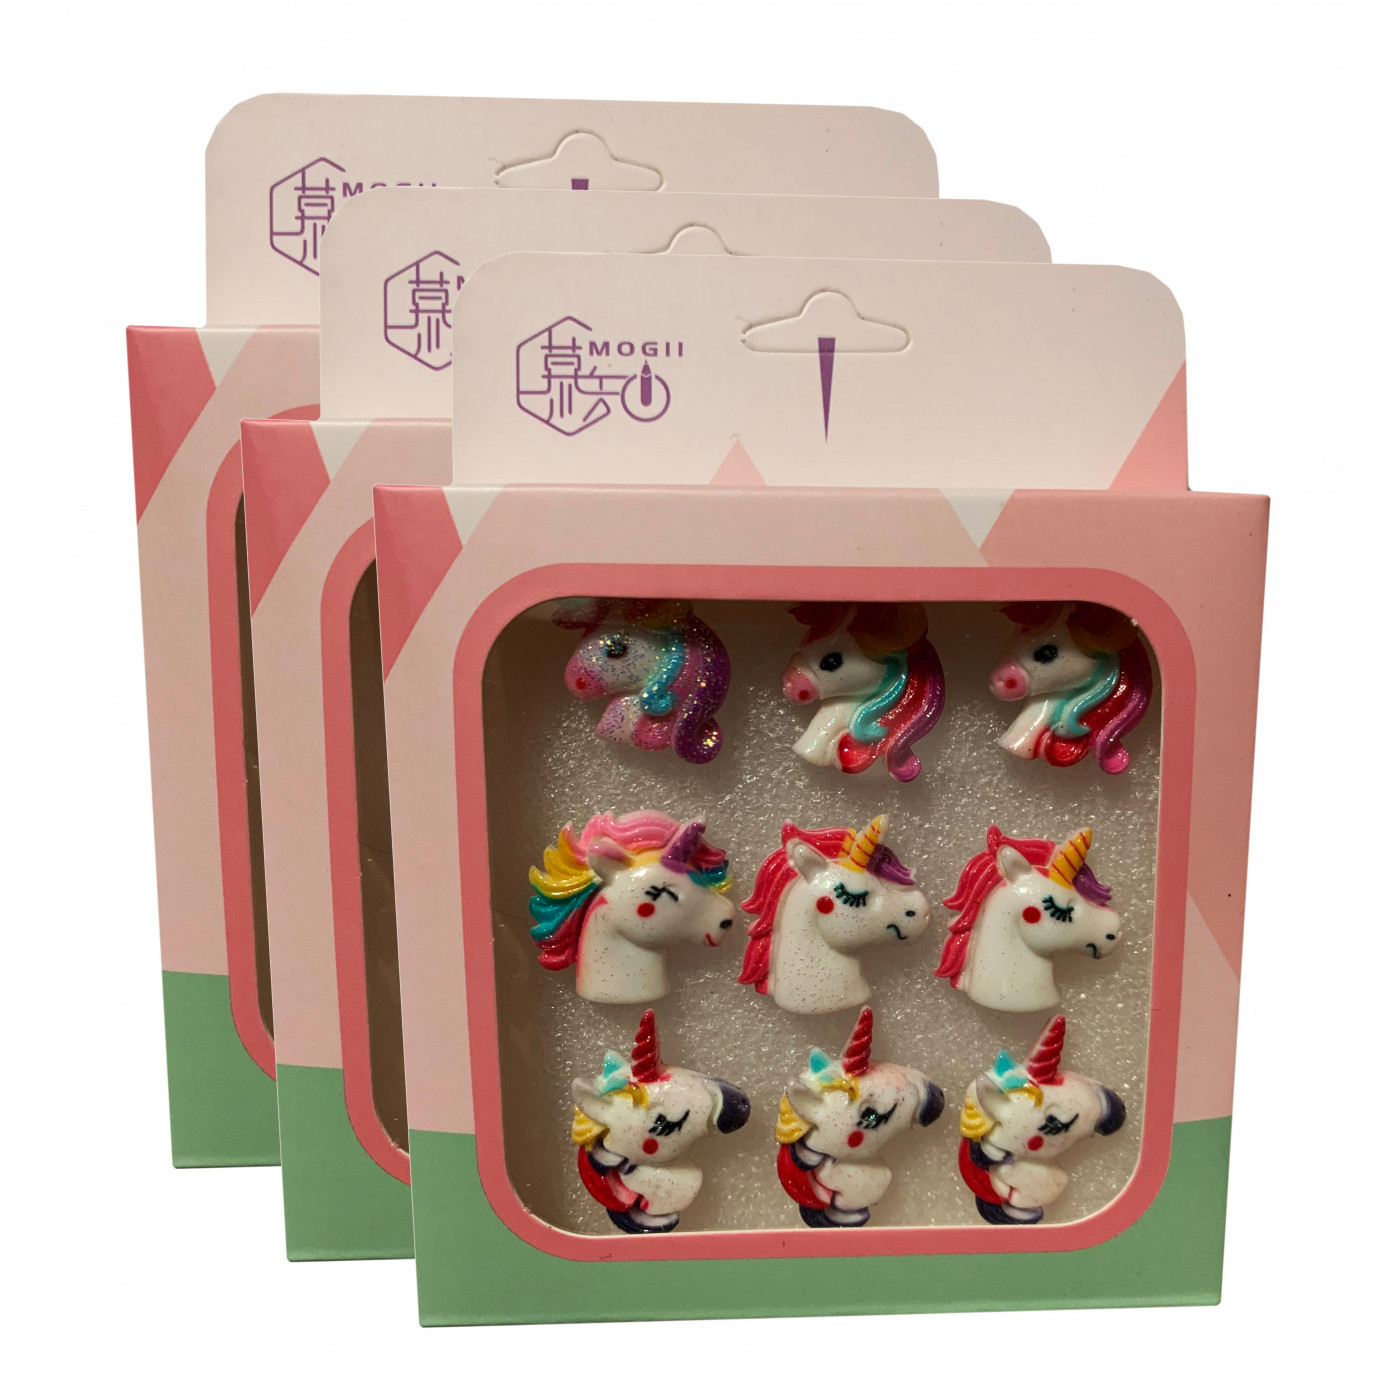 Set van 27 leuke punaises in doosjes (model: eenhoorn2)